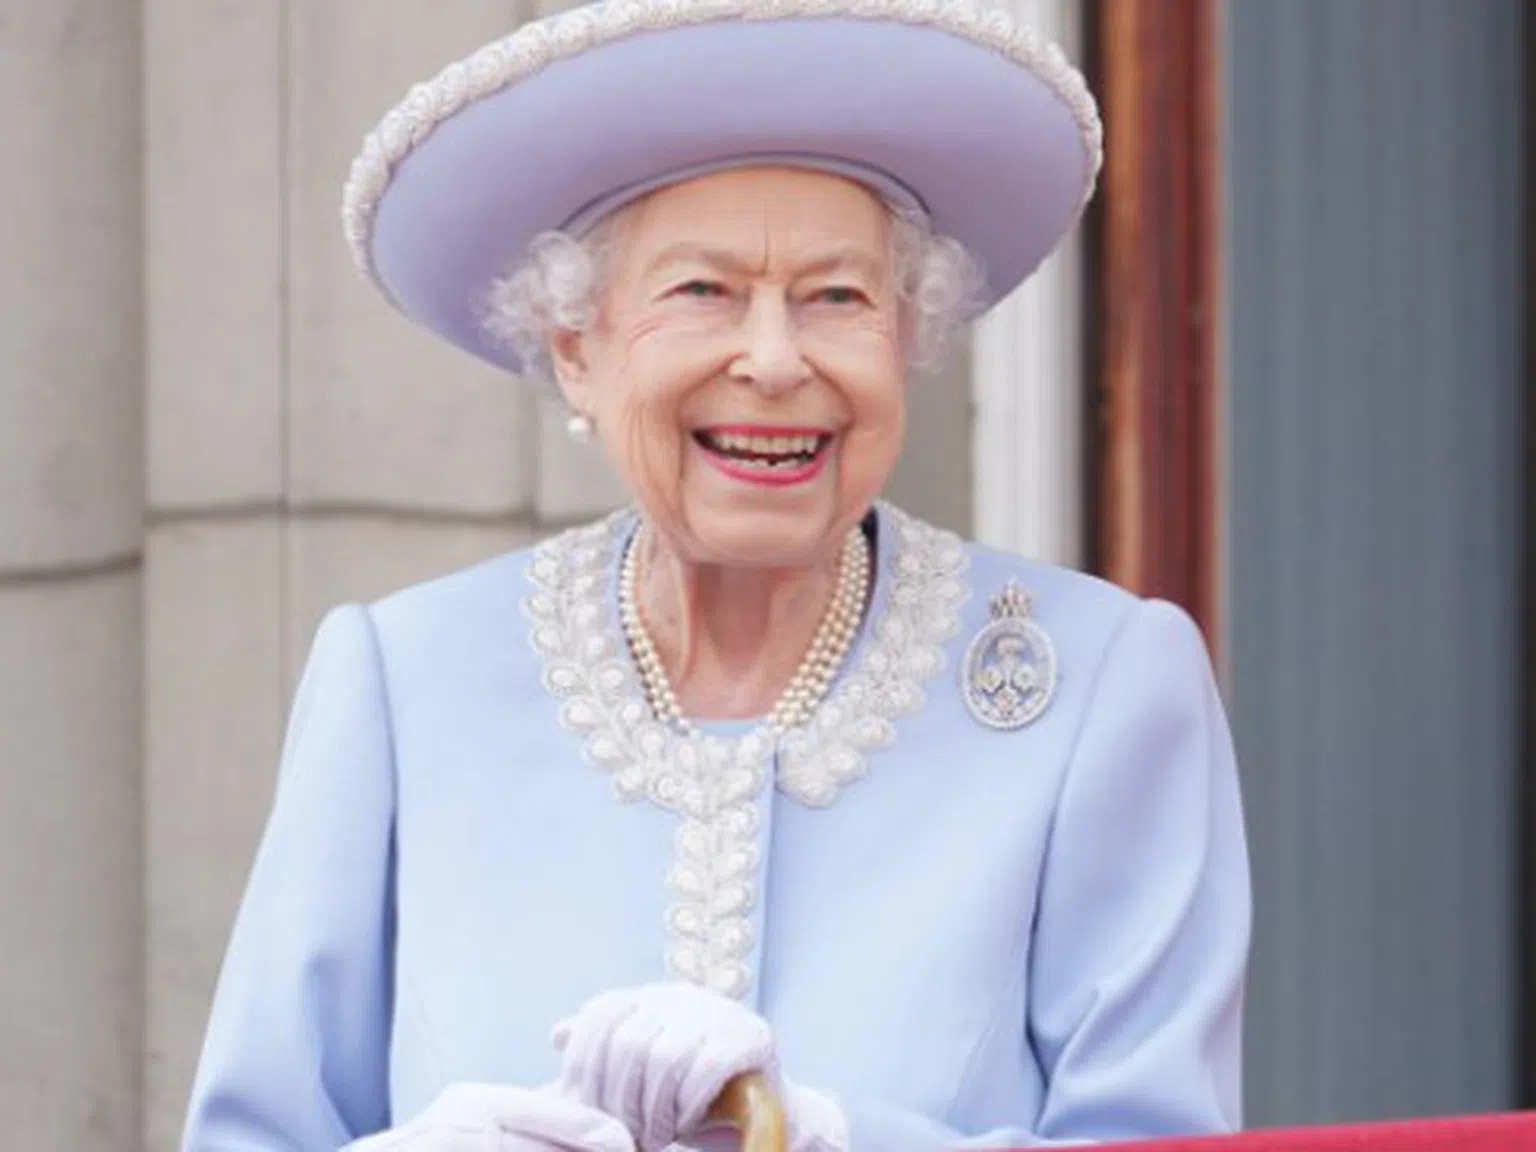 Кралицата имала тайно име: вижте как Елизабет Втора се е записвала в хотелите, за да остане анонимна